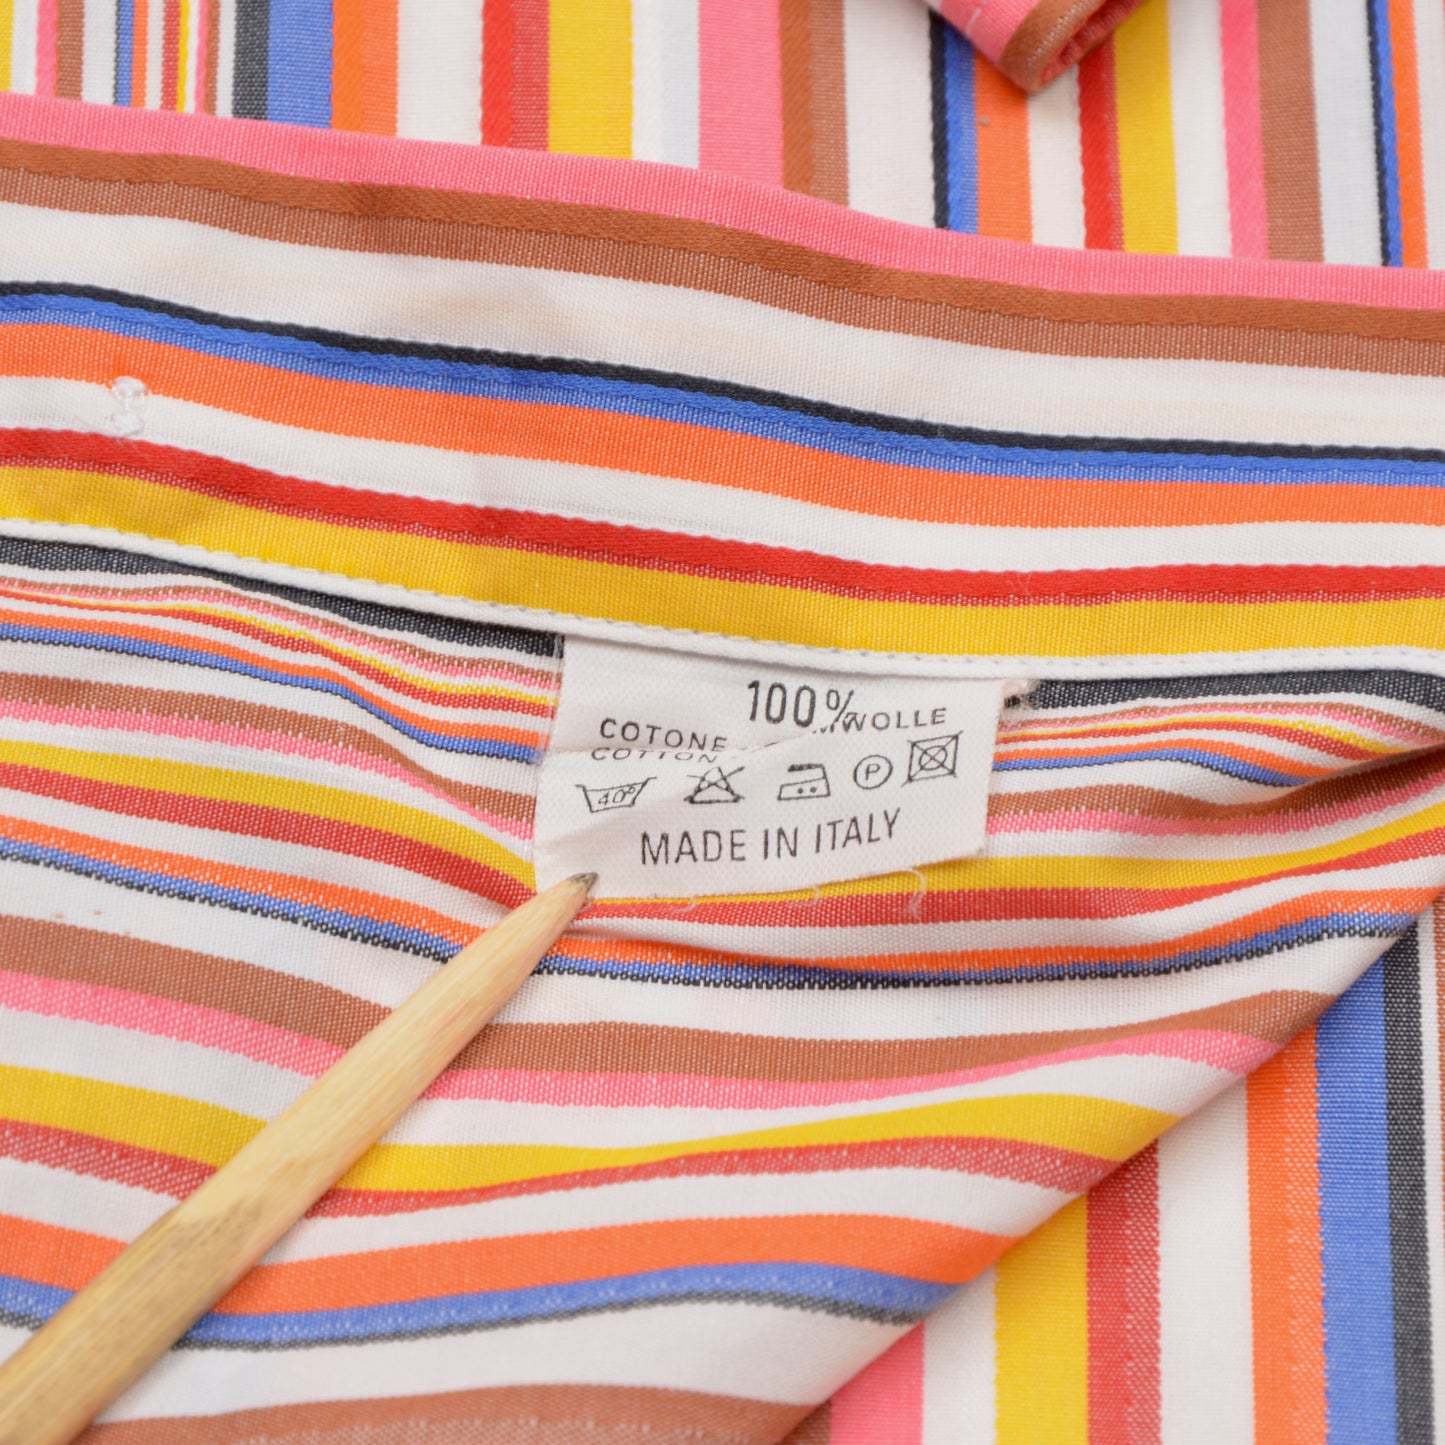 Etro Milano Hemd Größe 40 - Regenbogenstreifen